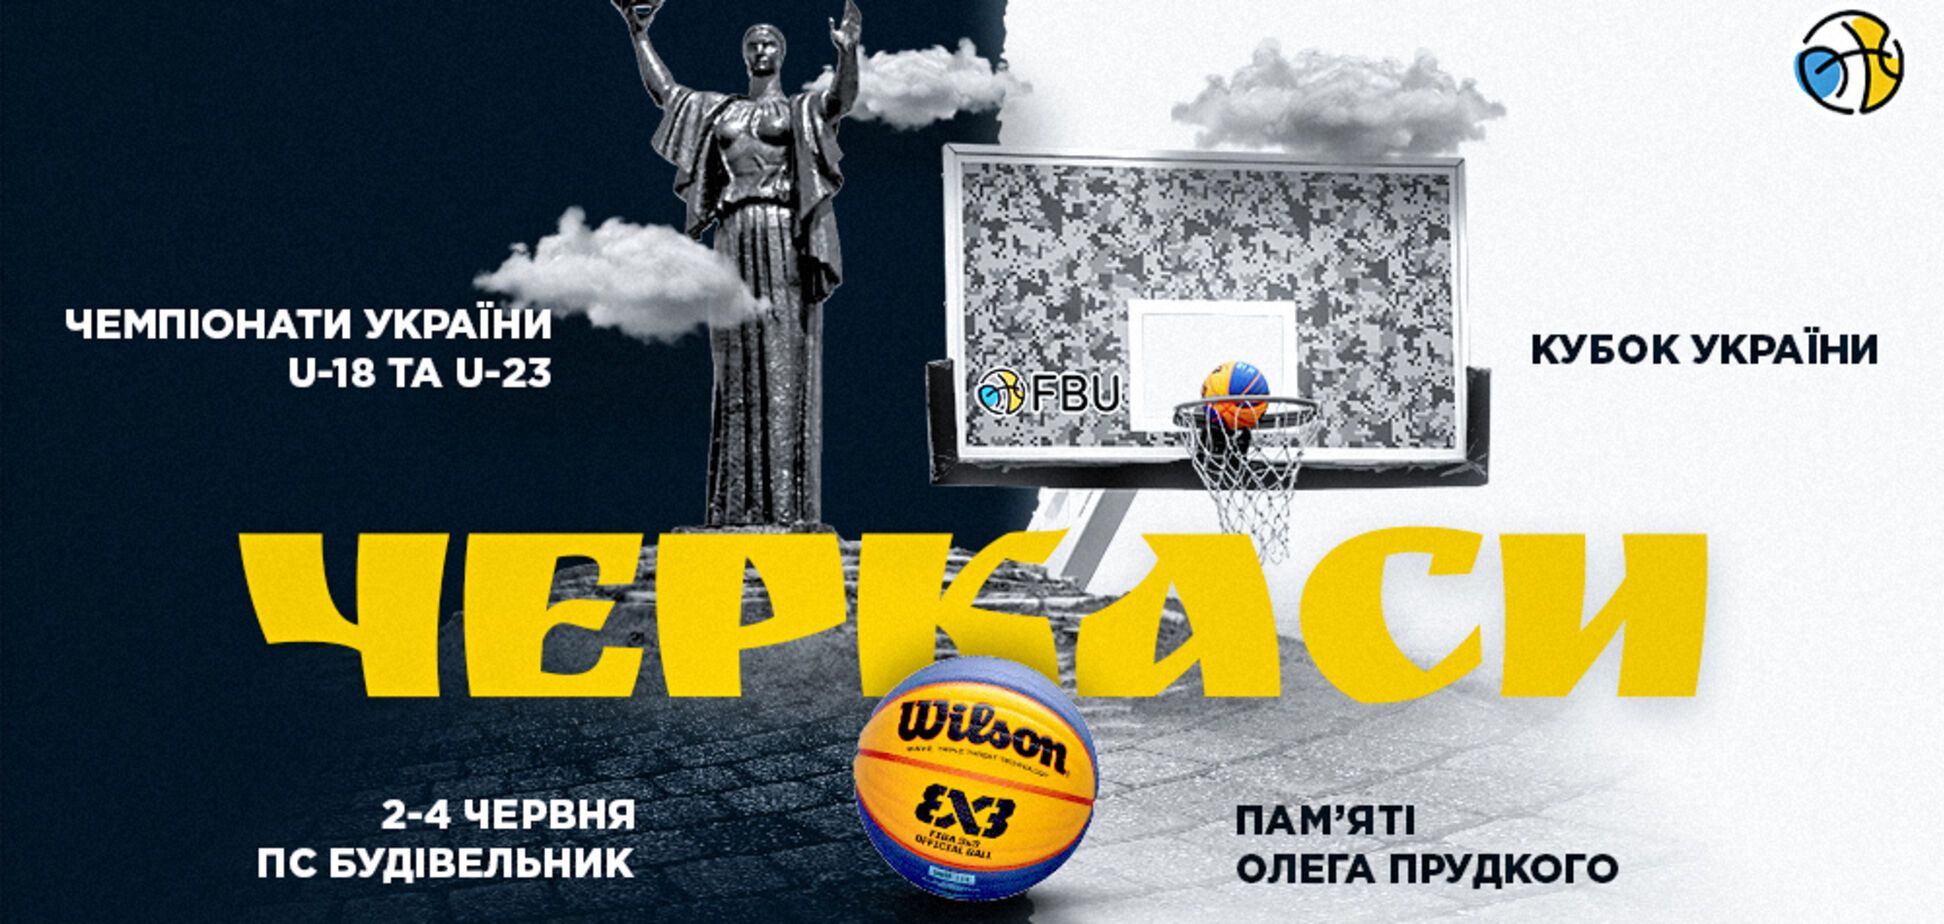 В Черкассах пройдет пятый тур Кубка Украины и этапы чемпионатов Украины U-18 и U-23 по баскетболу 3х3